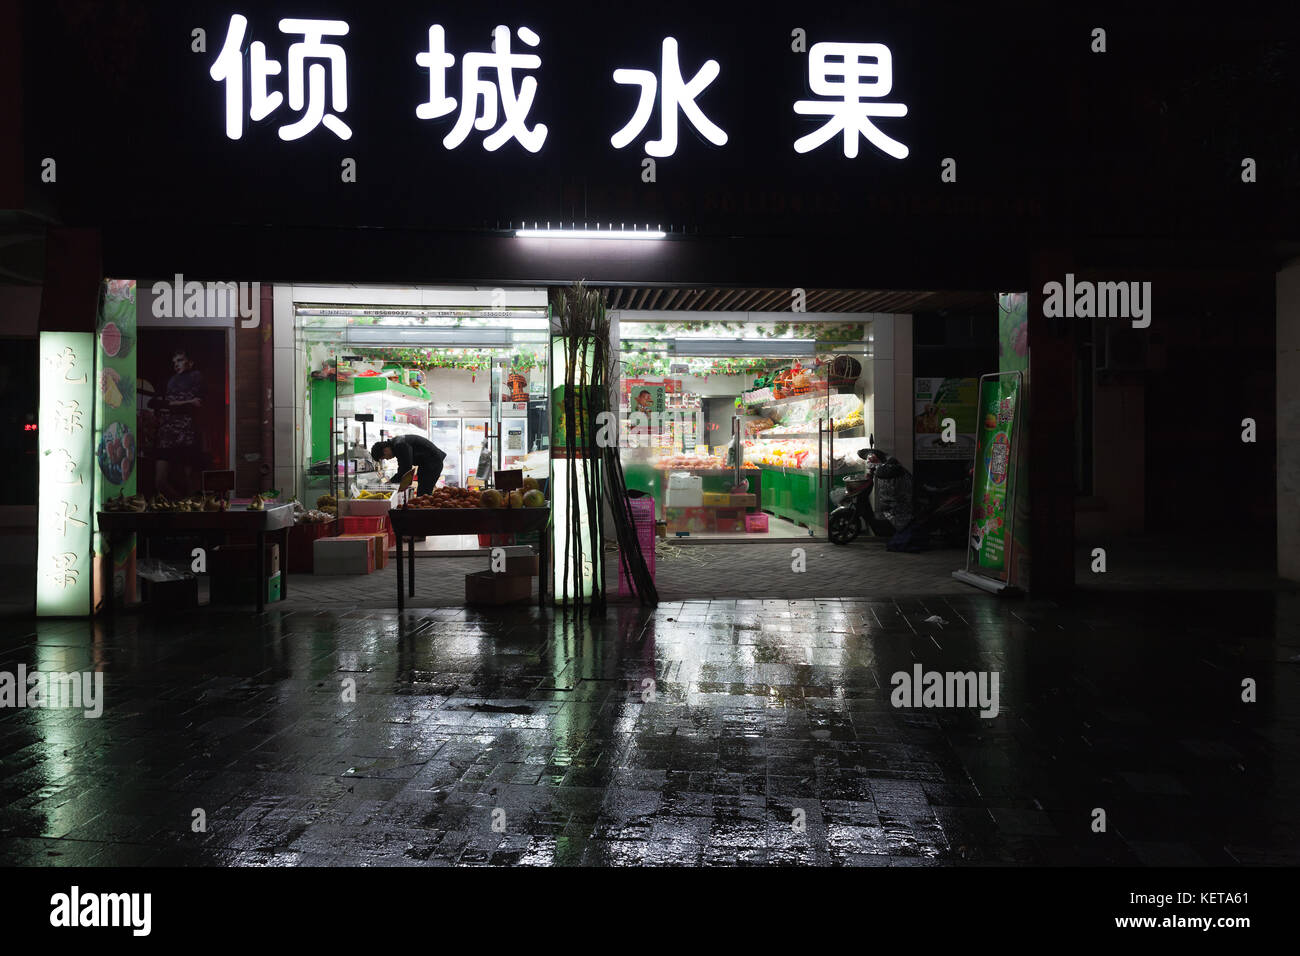 Hangzhou, China - Dezember 3, 2014: Traditionelle chinesische kleinen Lebensmittelmarkt mit Gemüse und Neon Werbung auf der Wand. Nacht street view Stockfoto